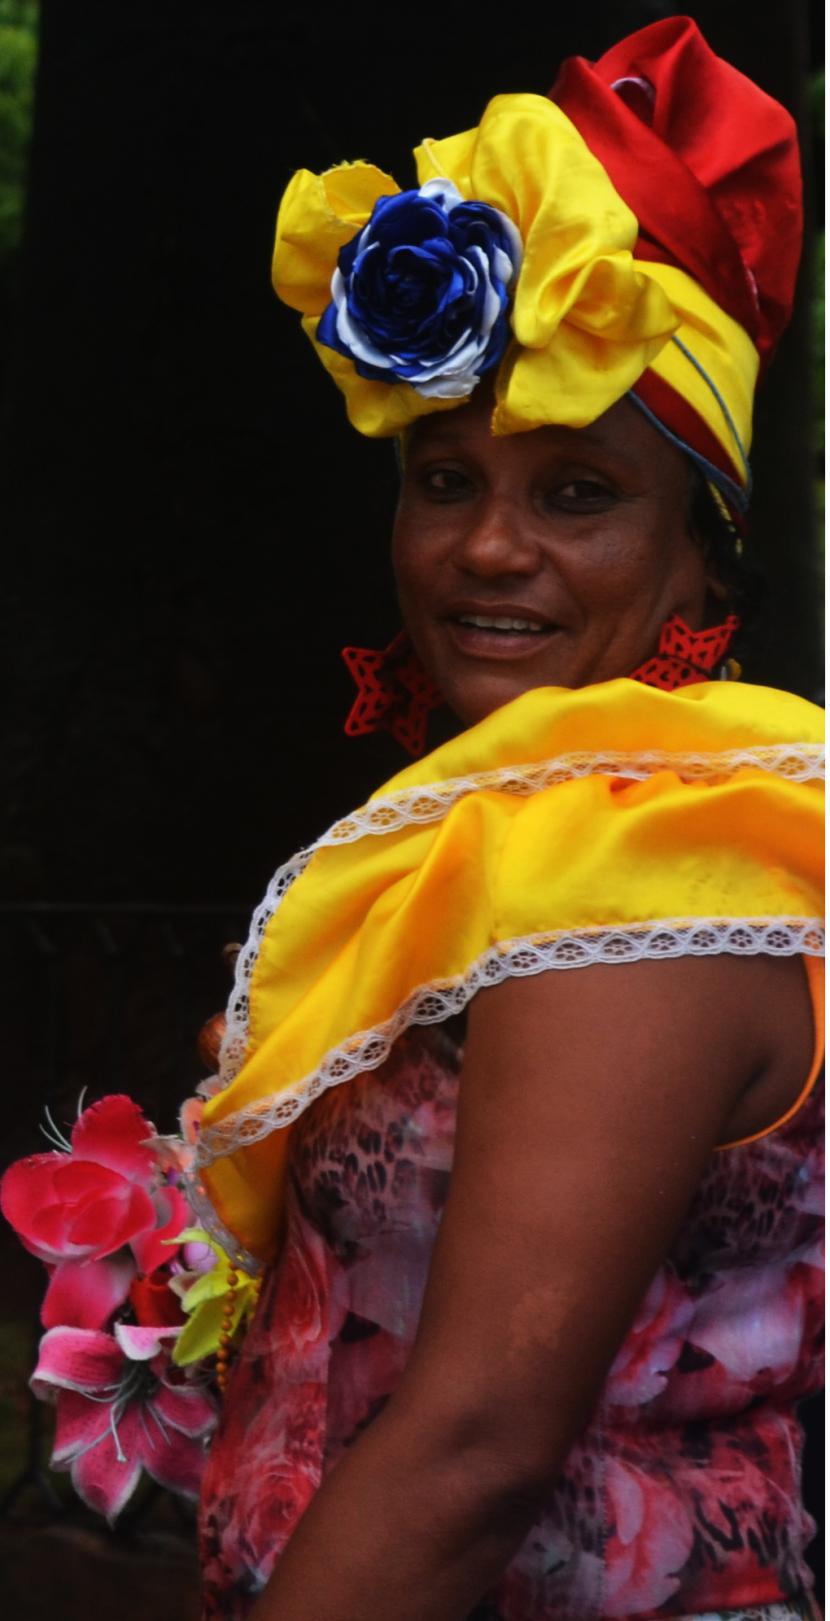 Tradicionalna oblačila žensk so ogledalo kubanske kulture.